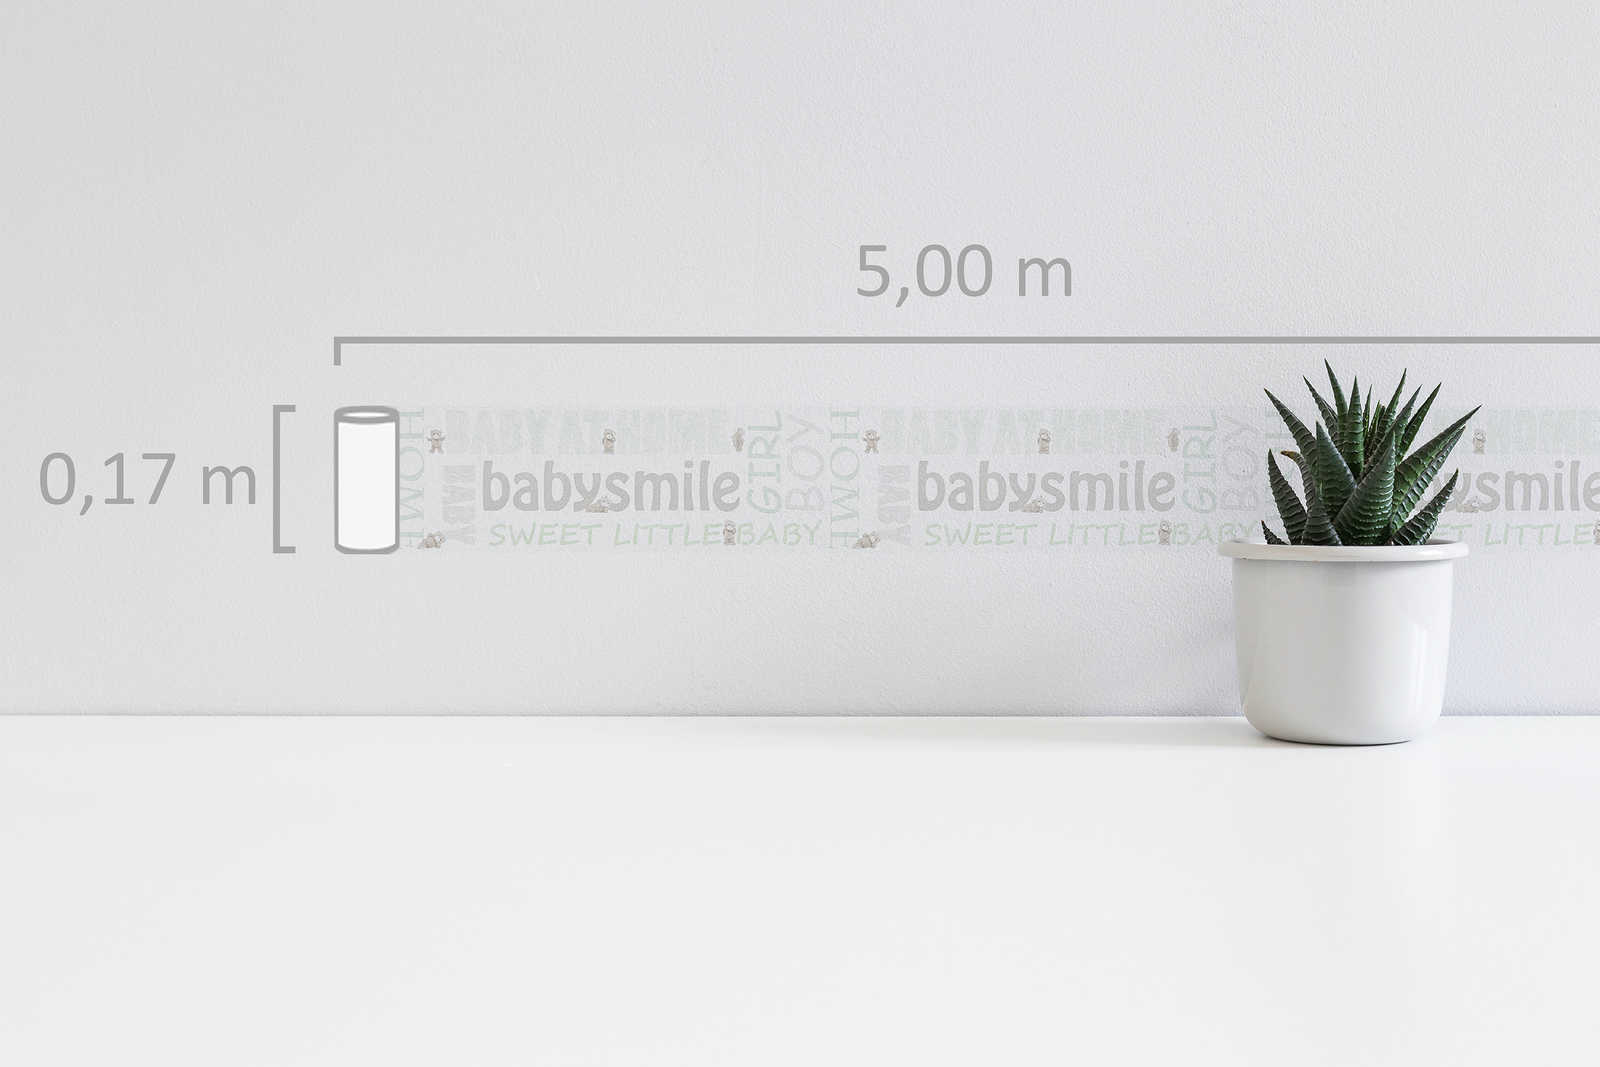             Behangrand baby motief voor kinderkamer - metallic, wit
        